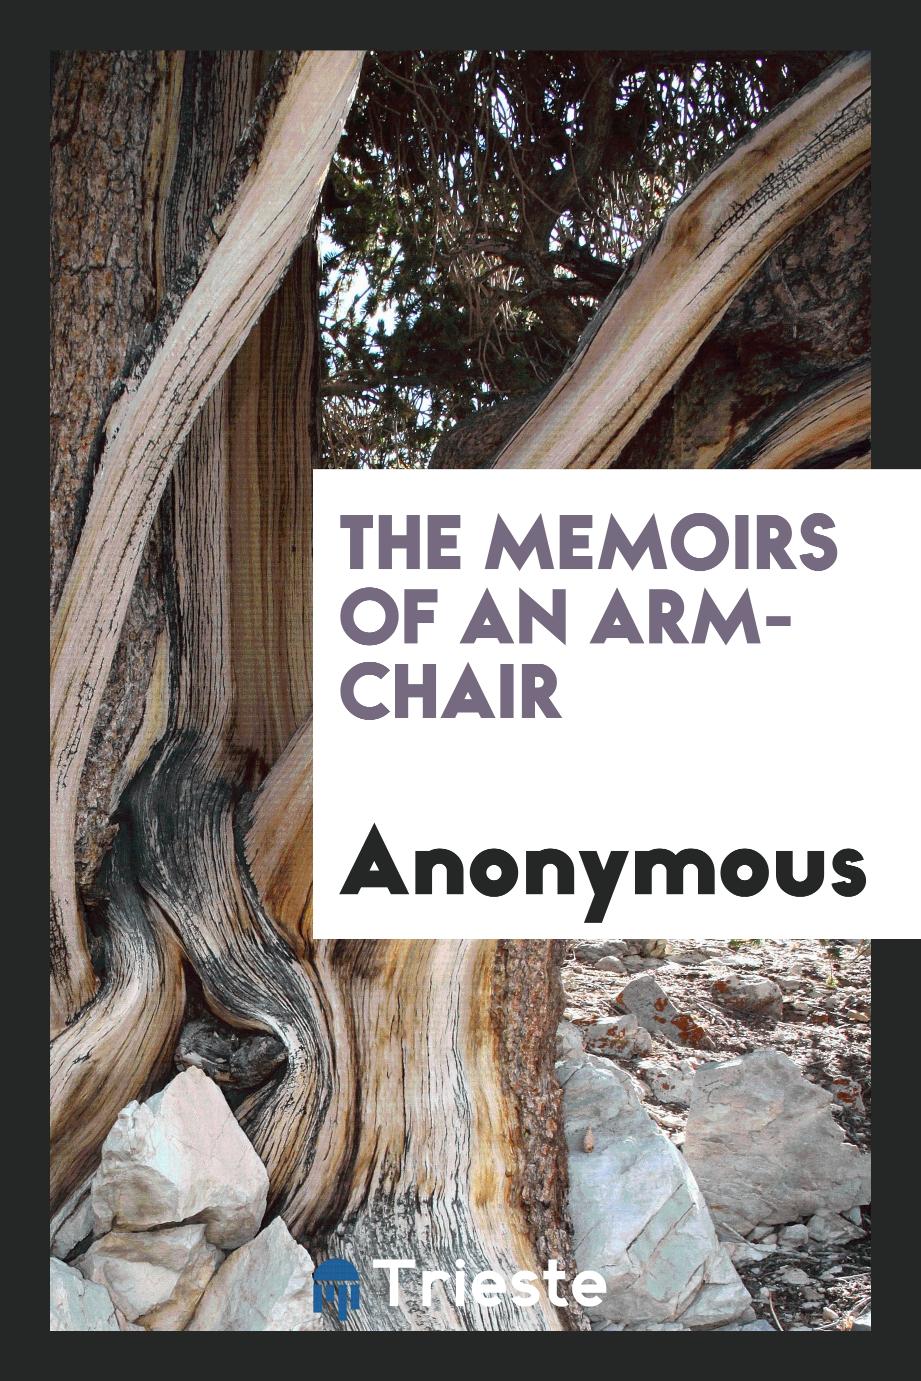 The Memoirs of an Arm-Chair